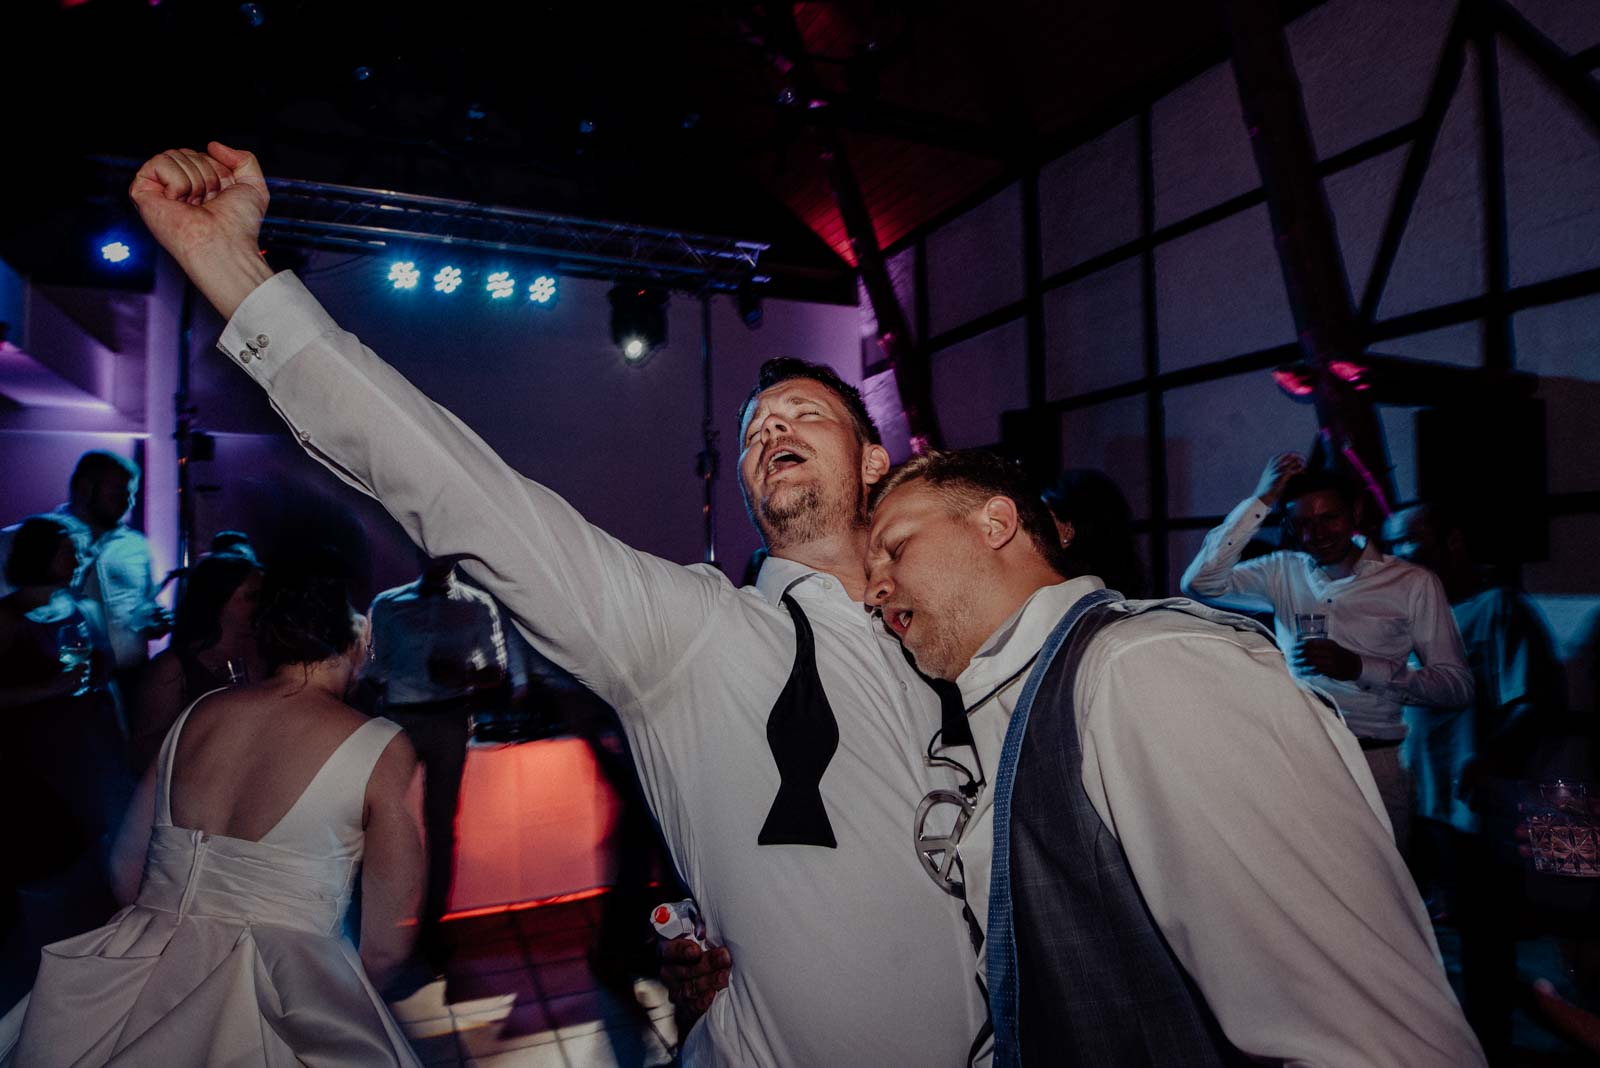 Hochzeitsfotograf Witten Blitzbilder und Partybilder Hochzeit